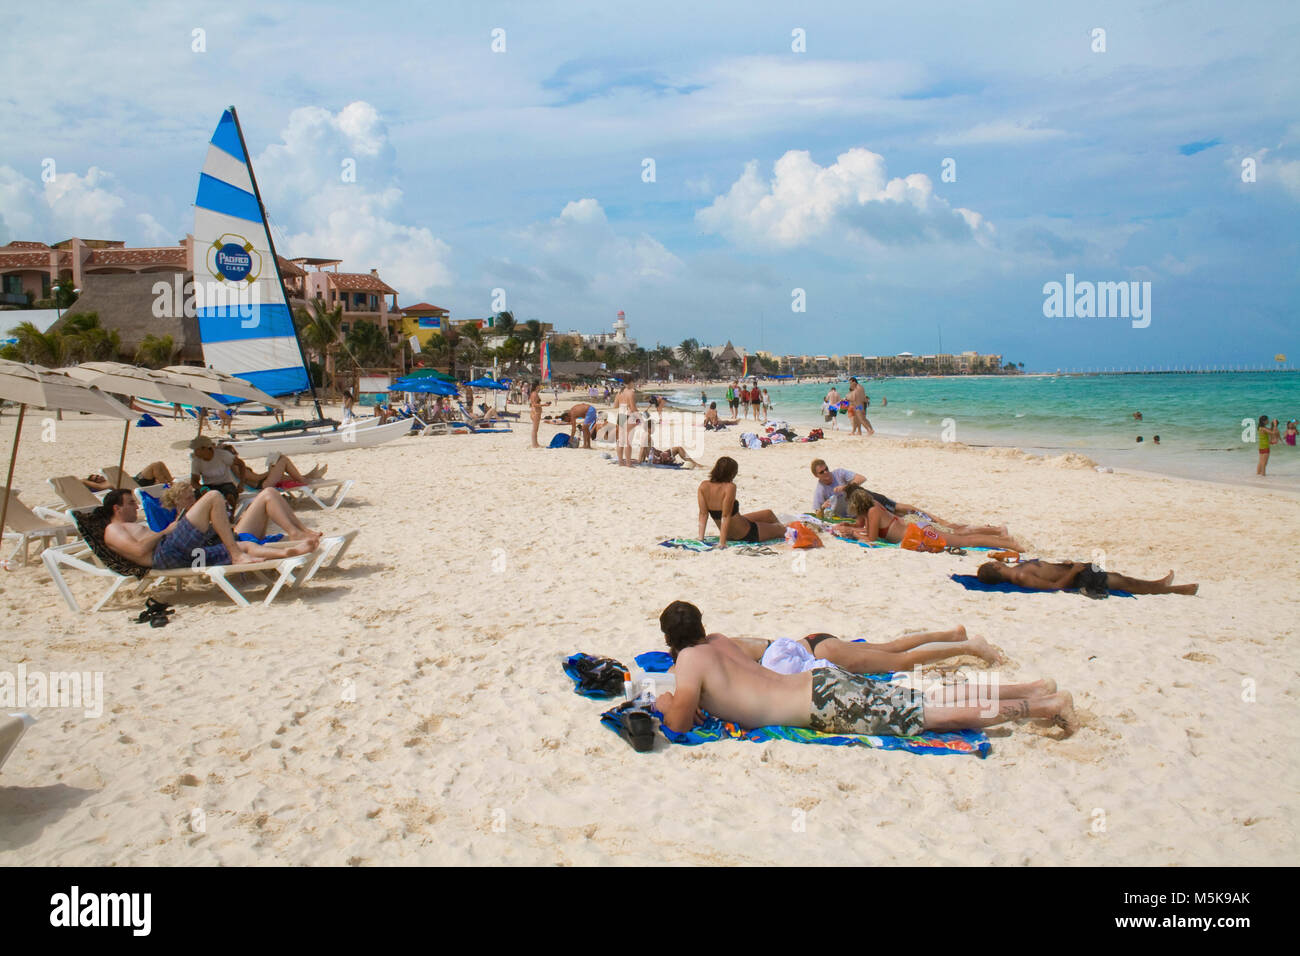 Sonnenbad am Strand von Playa del Carmen, Mexiko, Karibik | turistas tomando el sol en la playa de Playa del Carmen, México, el Caribe Foto de stock